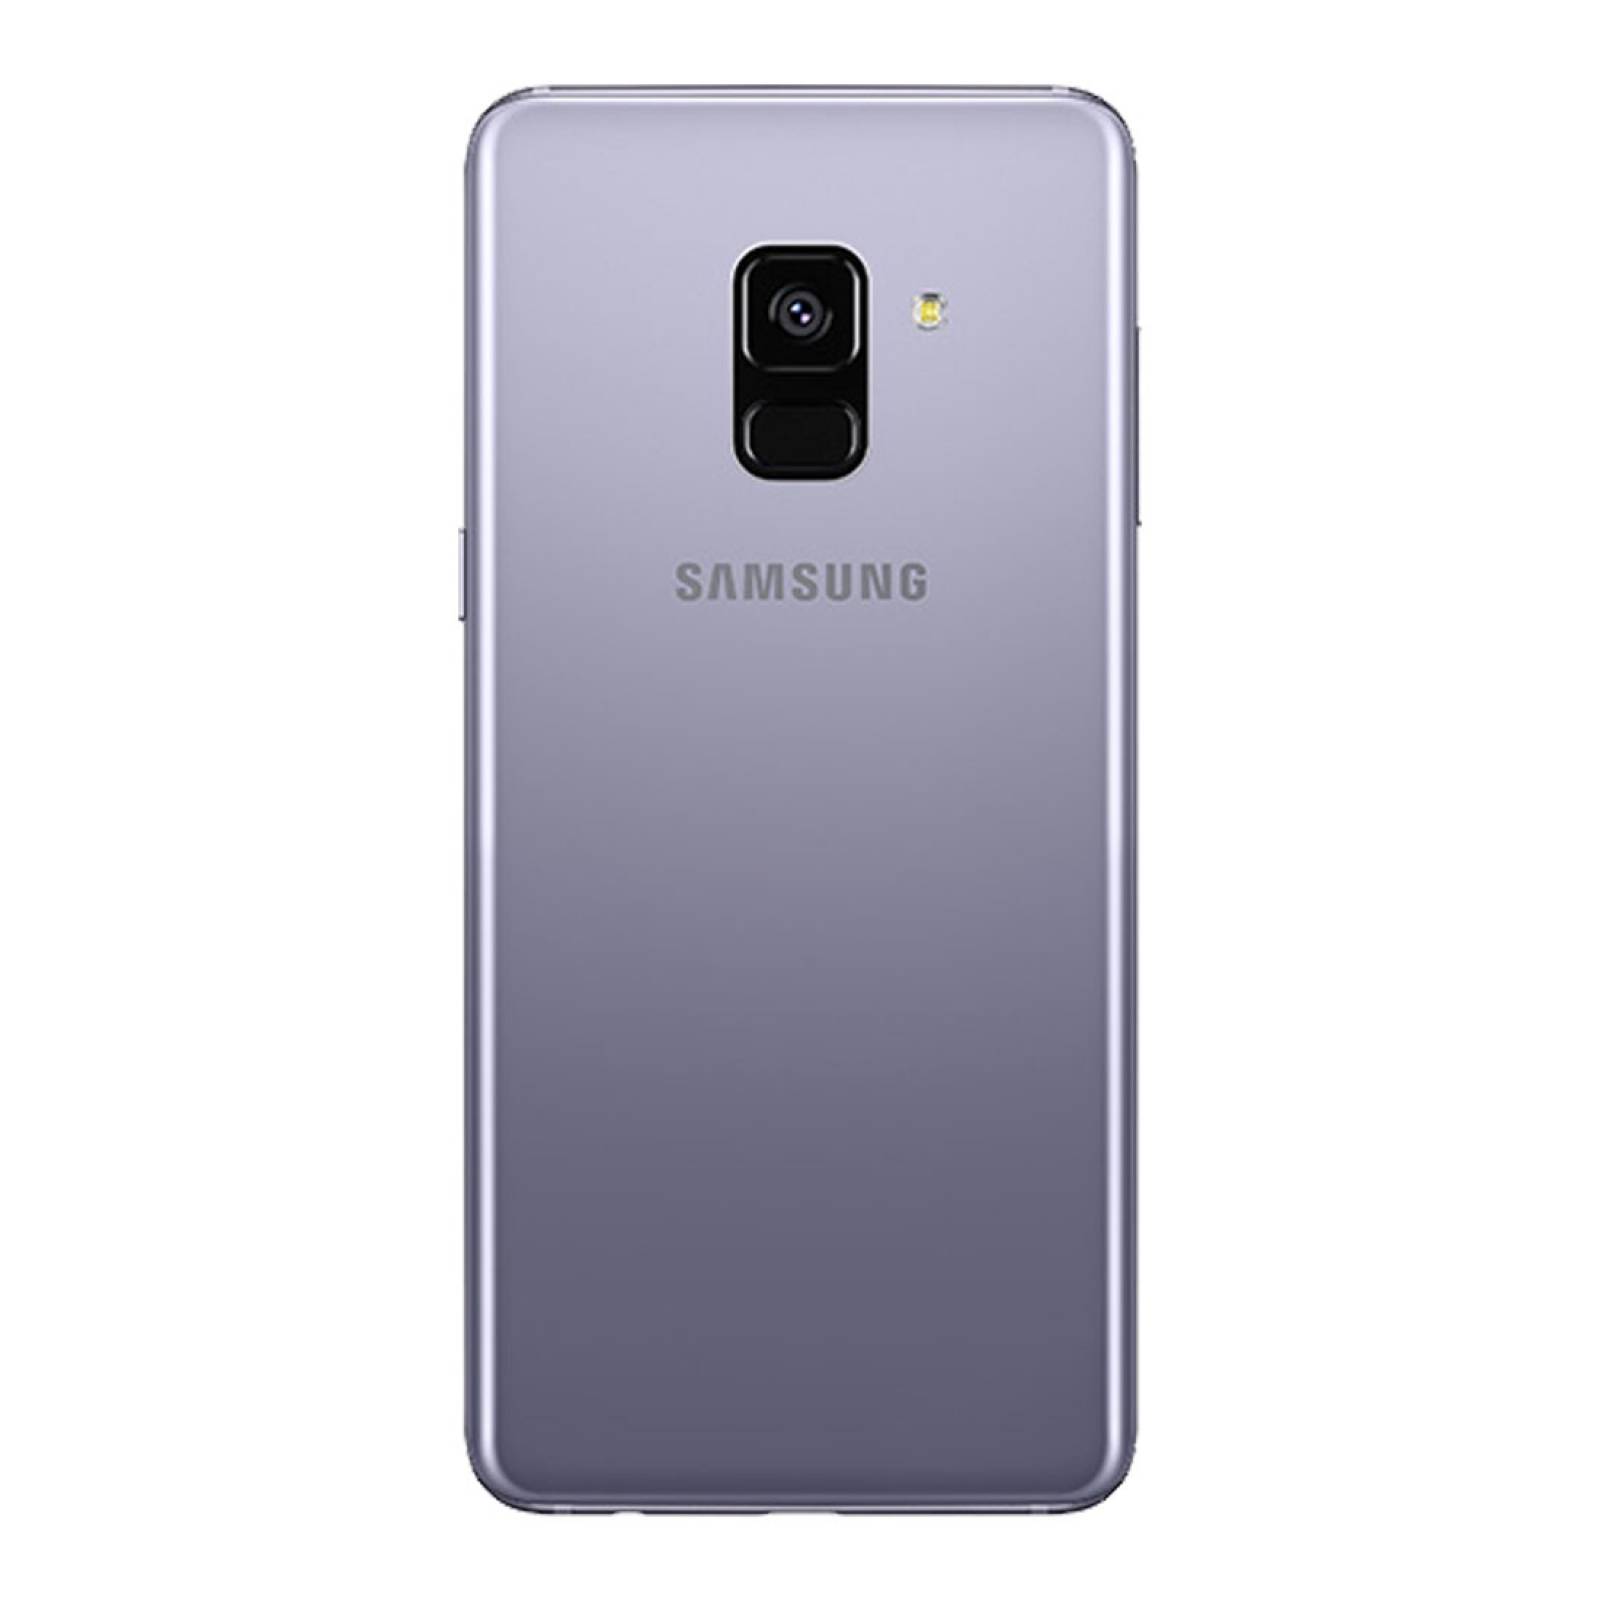 SMARTPHONE SAMSUNG GALAXY A8+ 2018 DUAL SIM 32GB NUEVO